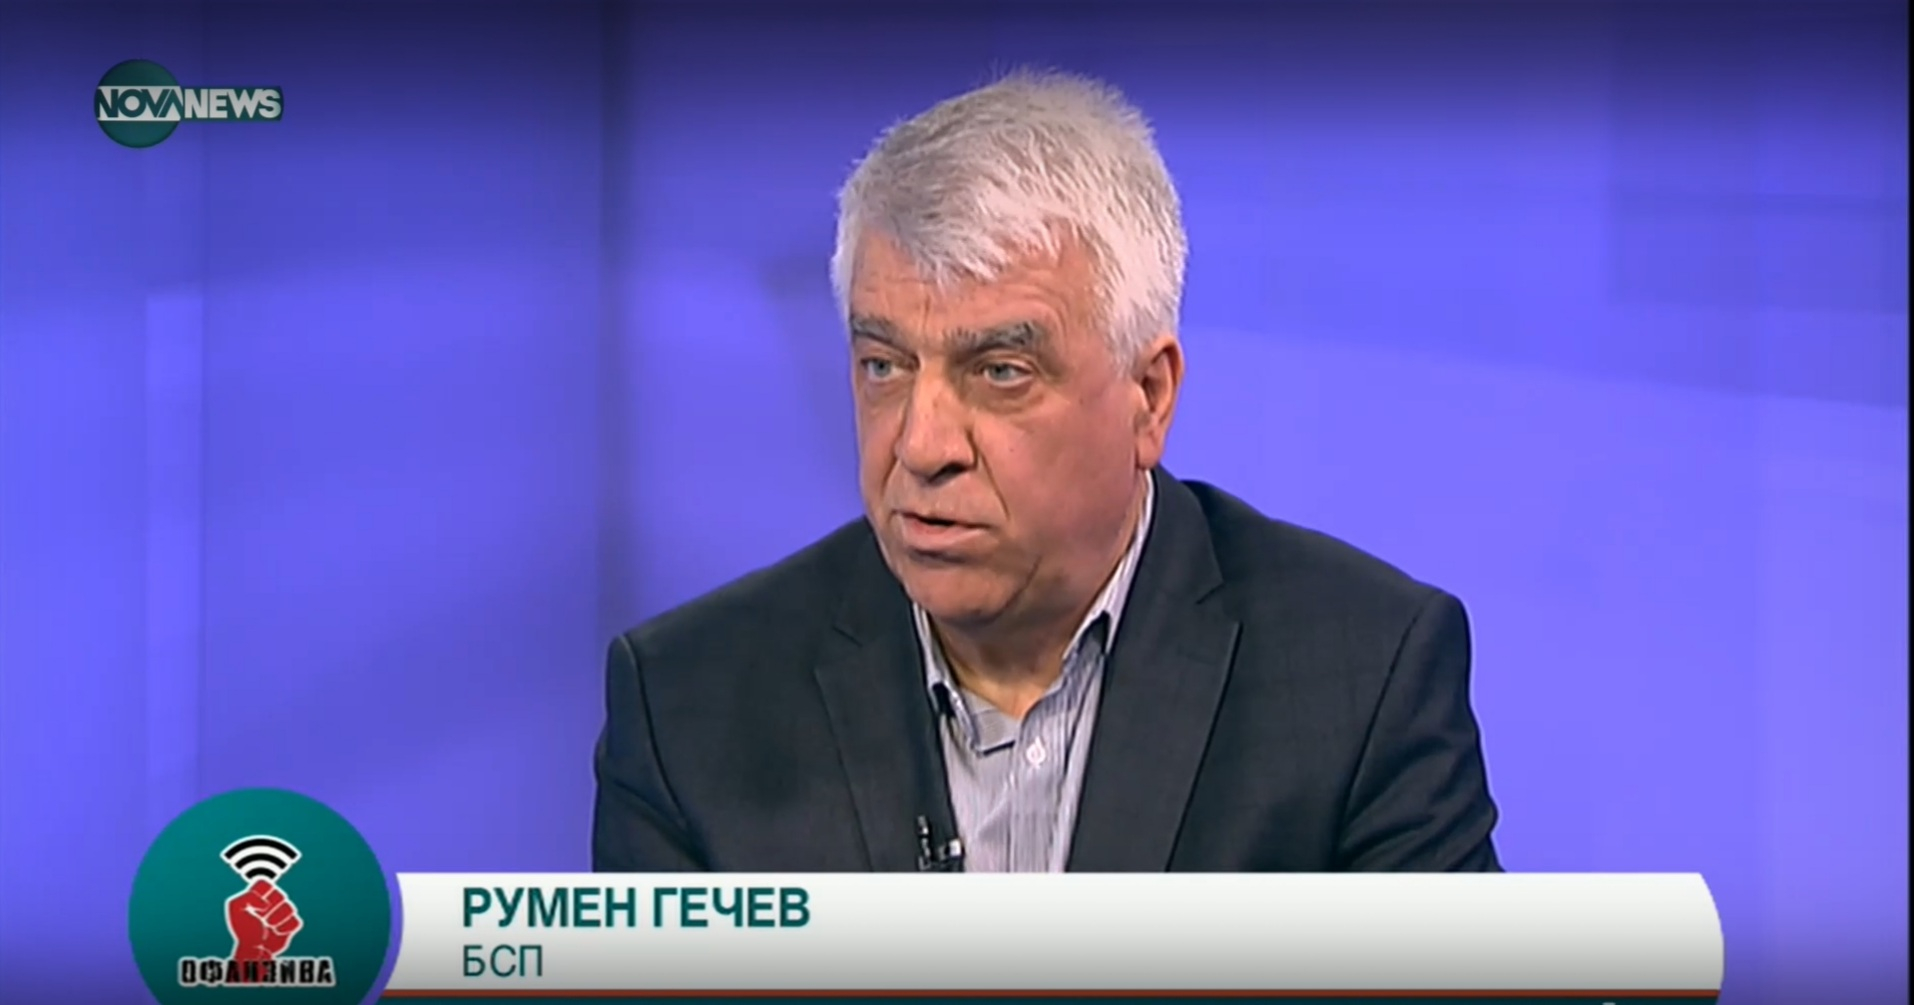 Проф. Румен Гечев: БСП е против санкциите, те са във вреда на България